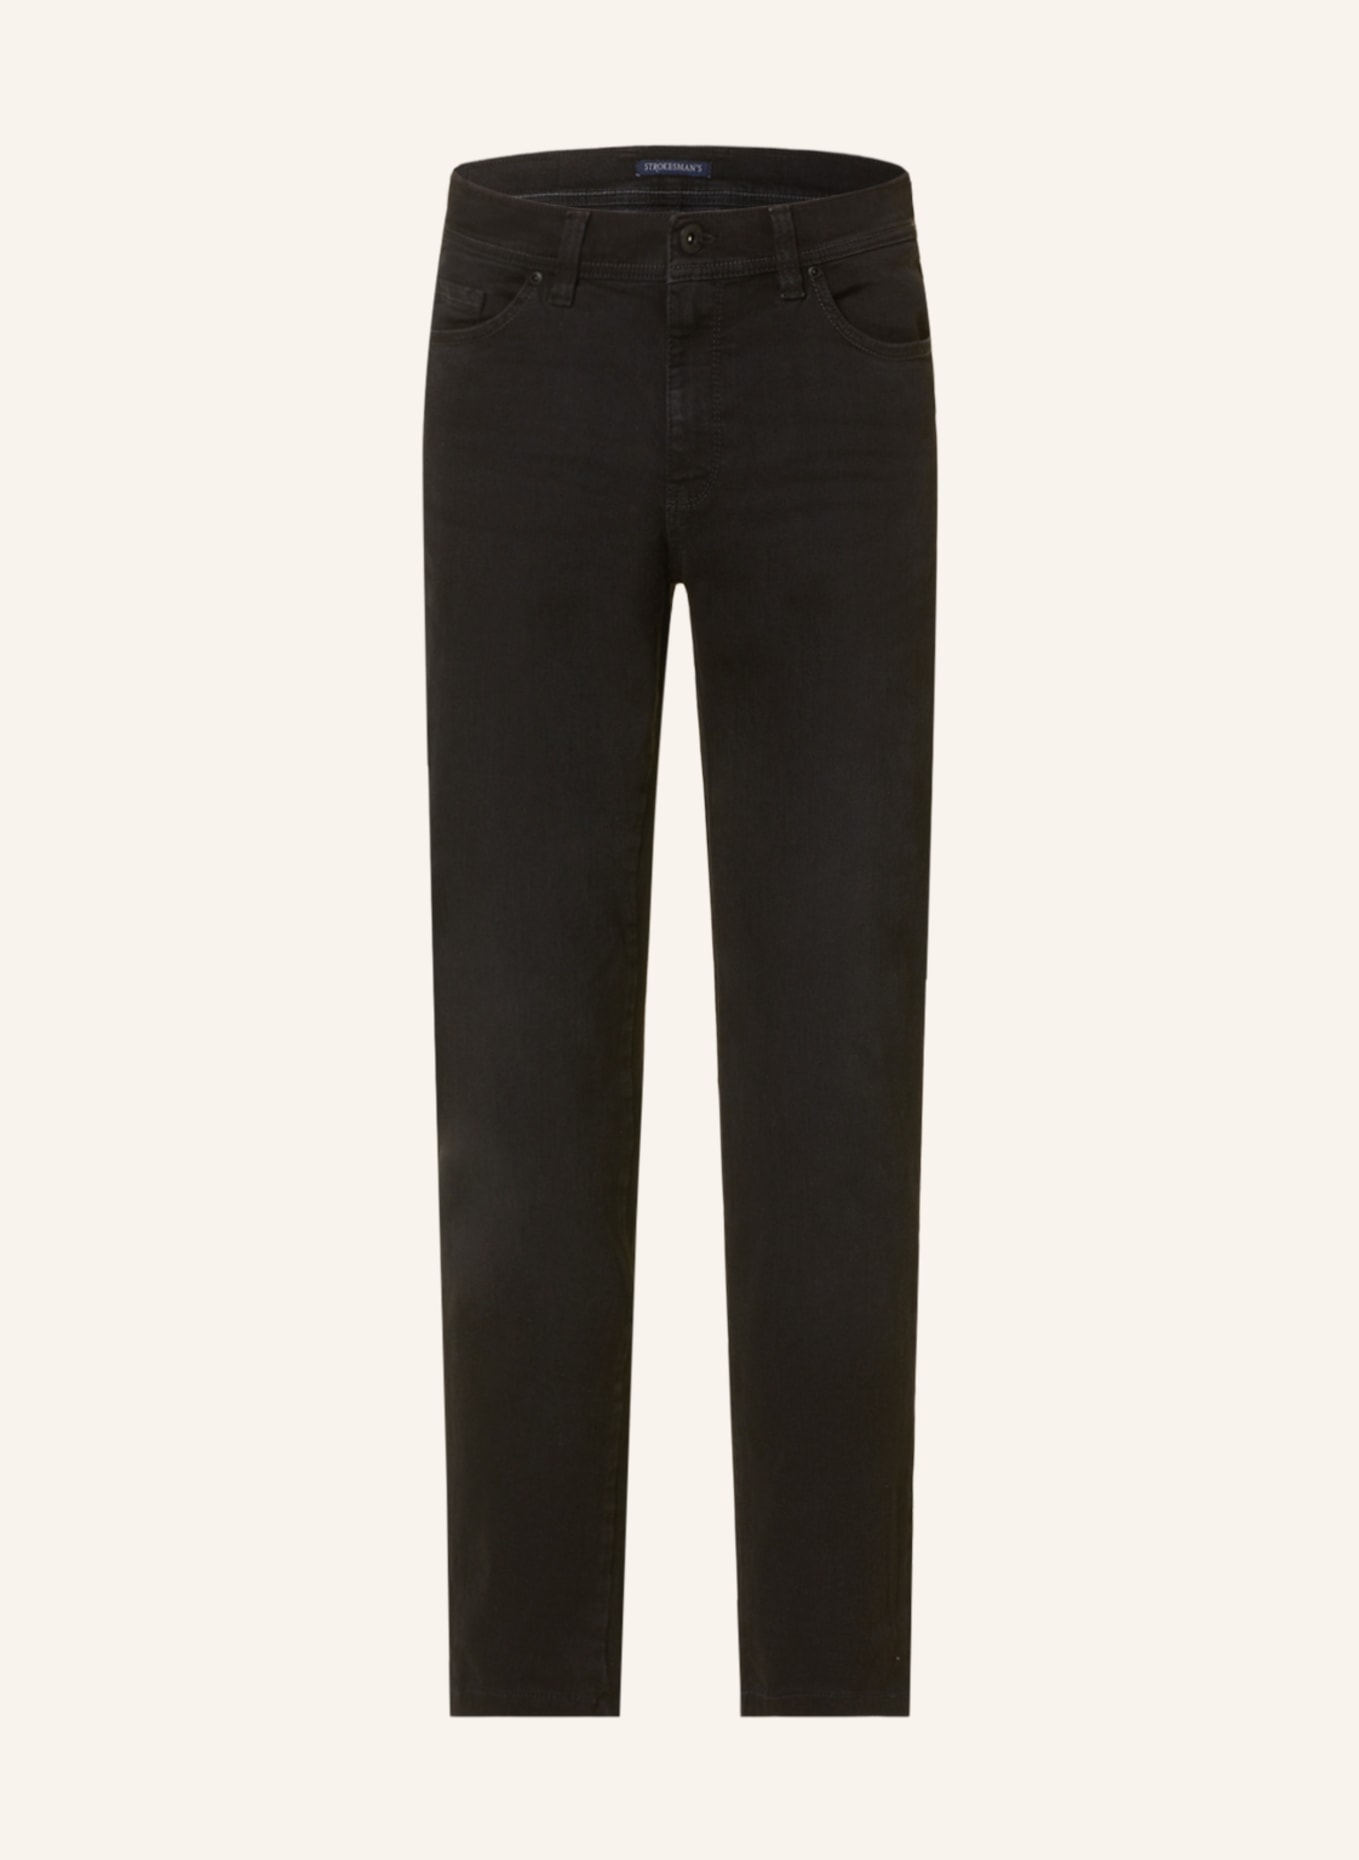 STROKESMAN'S Jeans Slim Fit, Farbe: 6000 black (Bild 1)